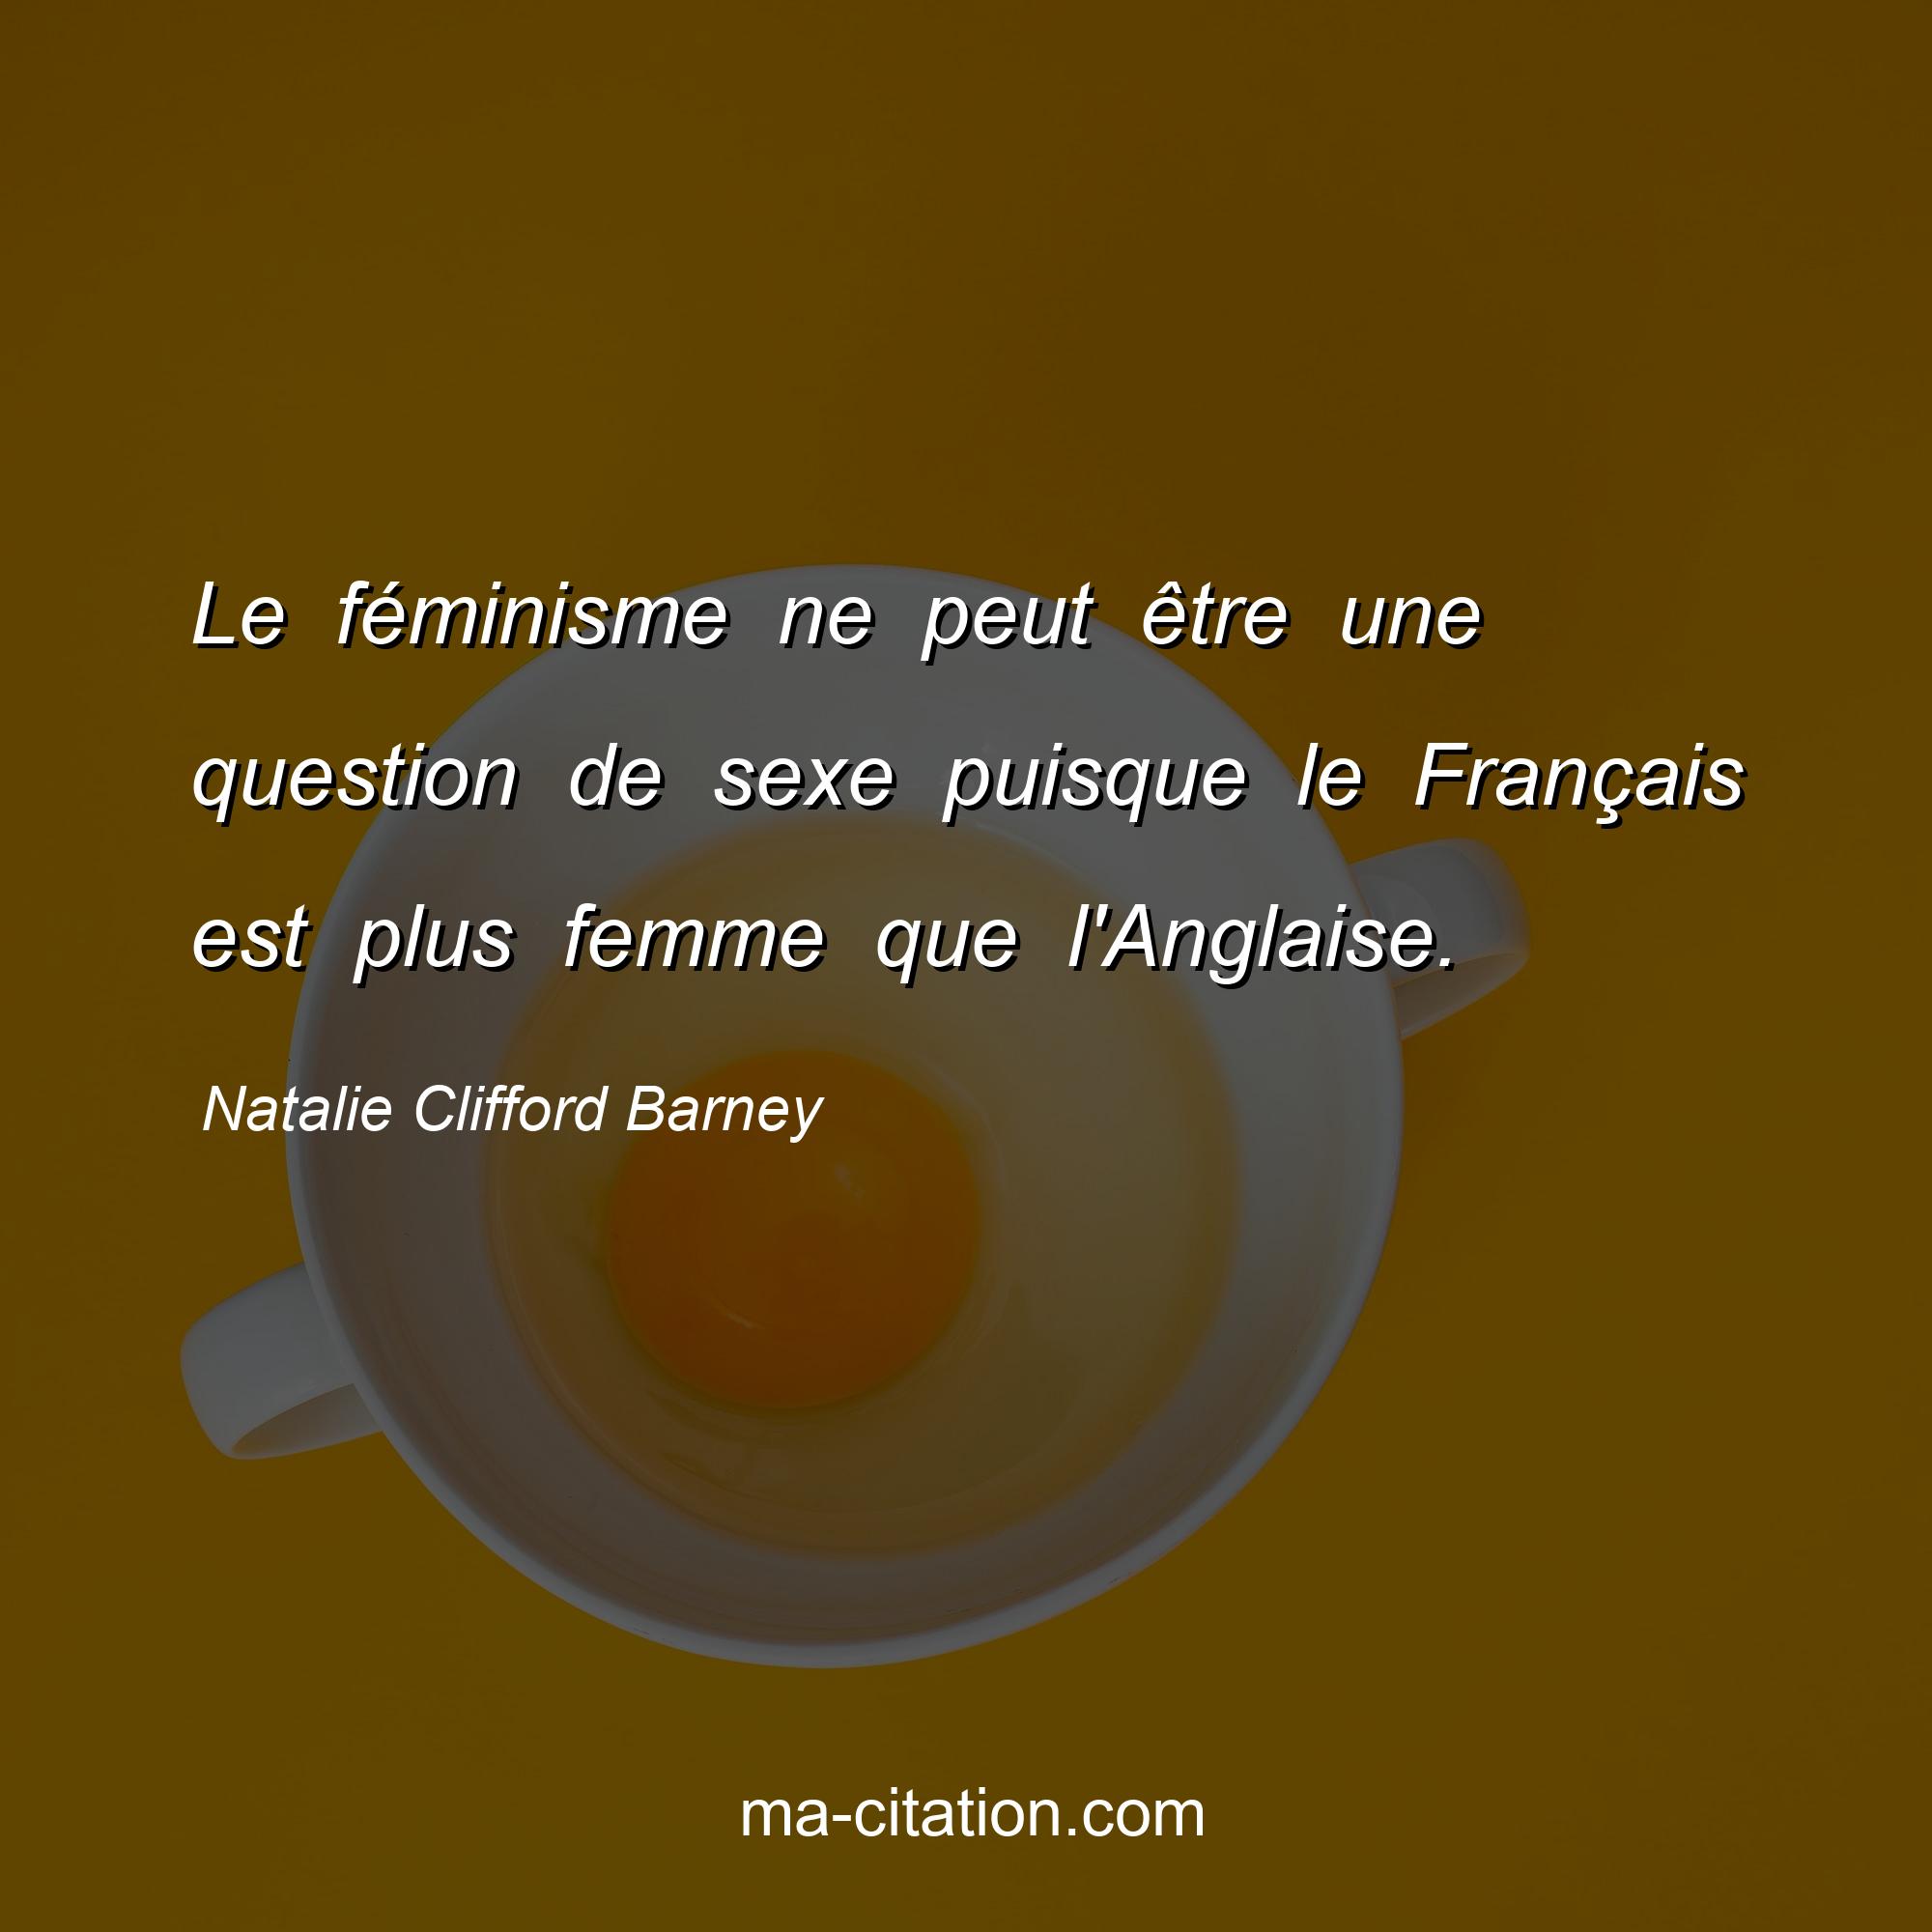 Natalie Clifford Barney : Le féminisme ne peut être une question de sexe puisque le Français est plus femme que l'Anglaise.